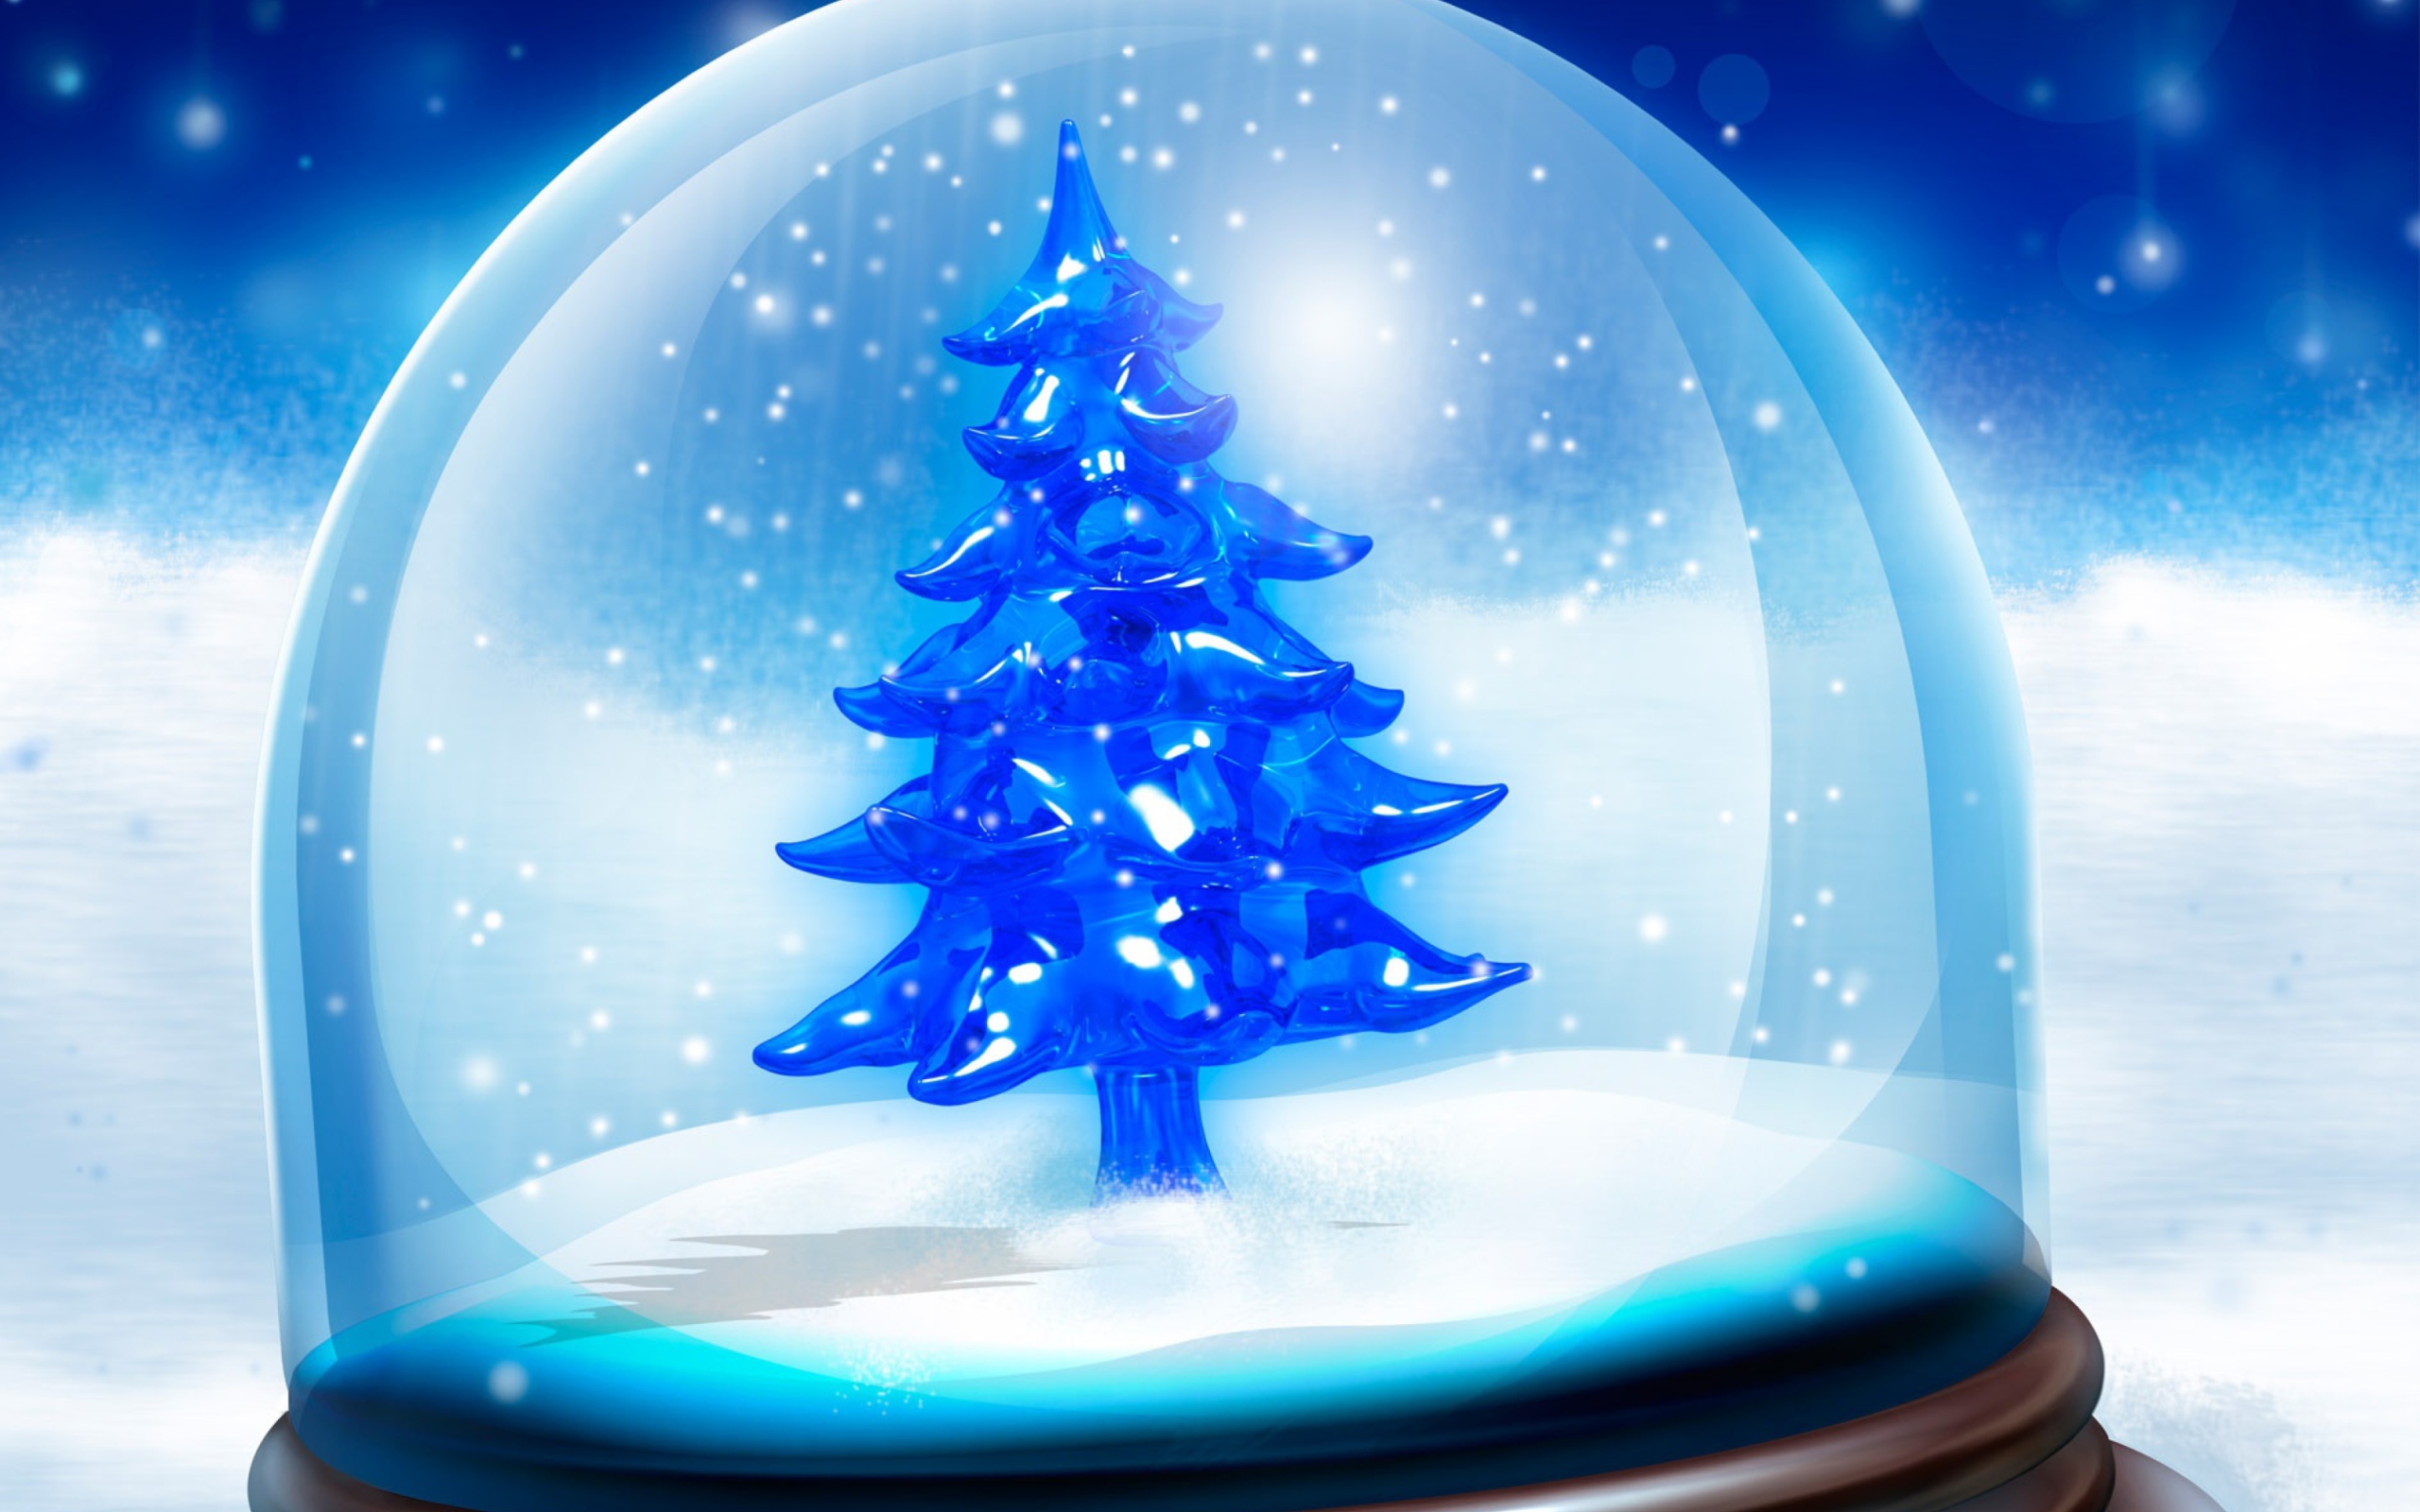 Das Snowy Christmas Tree Wallpaper 2560x1600